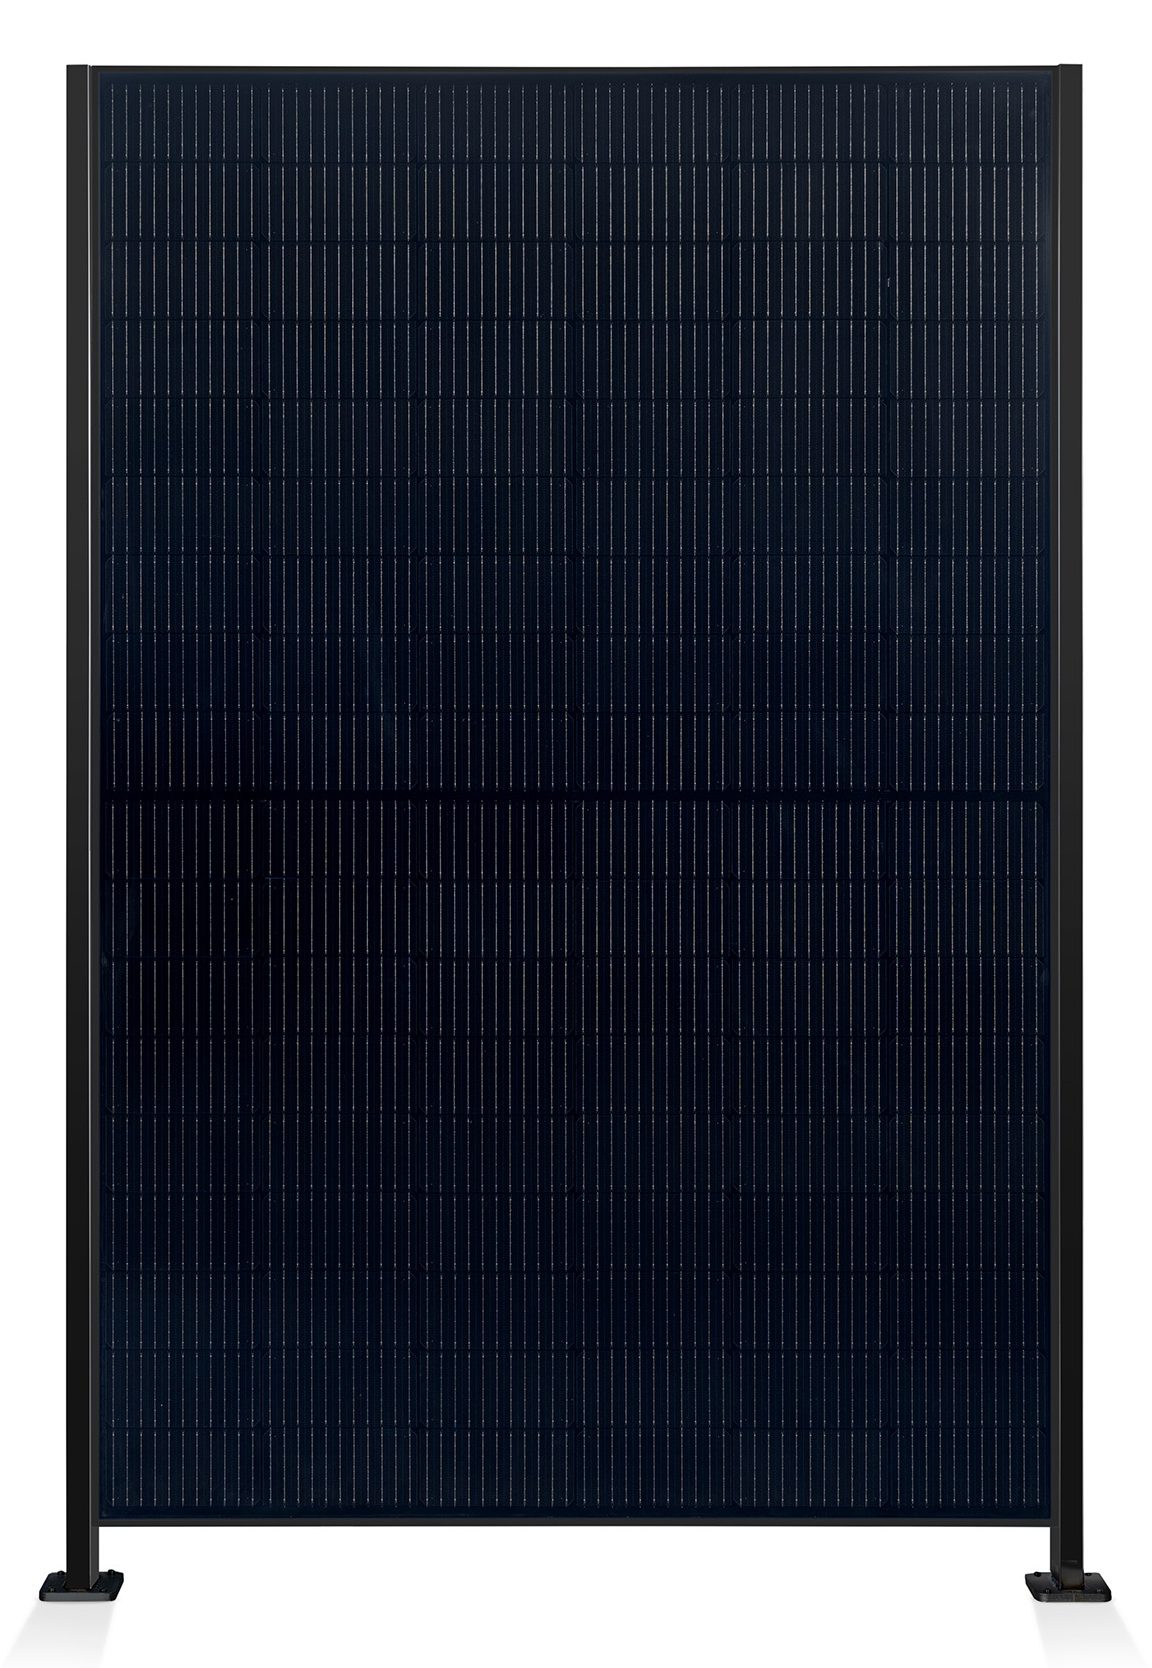 ausschnitt_0003_element-solar-sichtschutz-pv-photovoltaik-zaun-collection-hutter-panel-schwarz-pfosten-schwarz-front